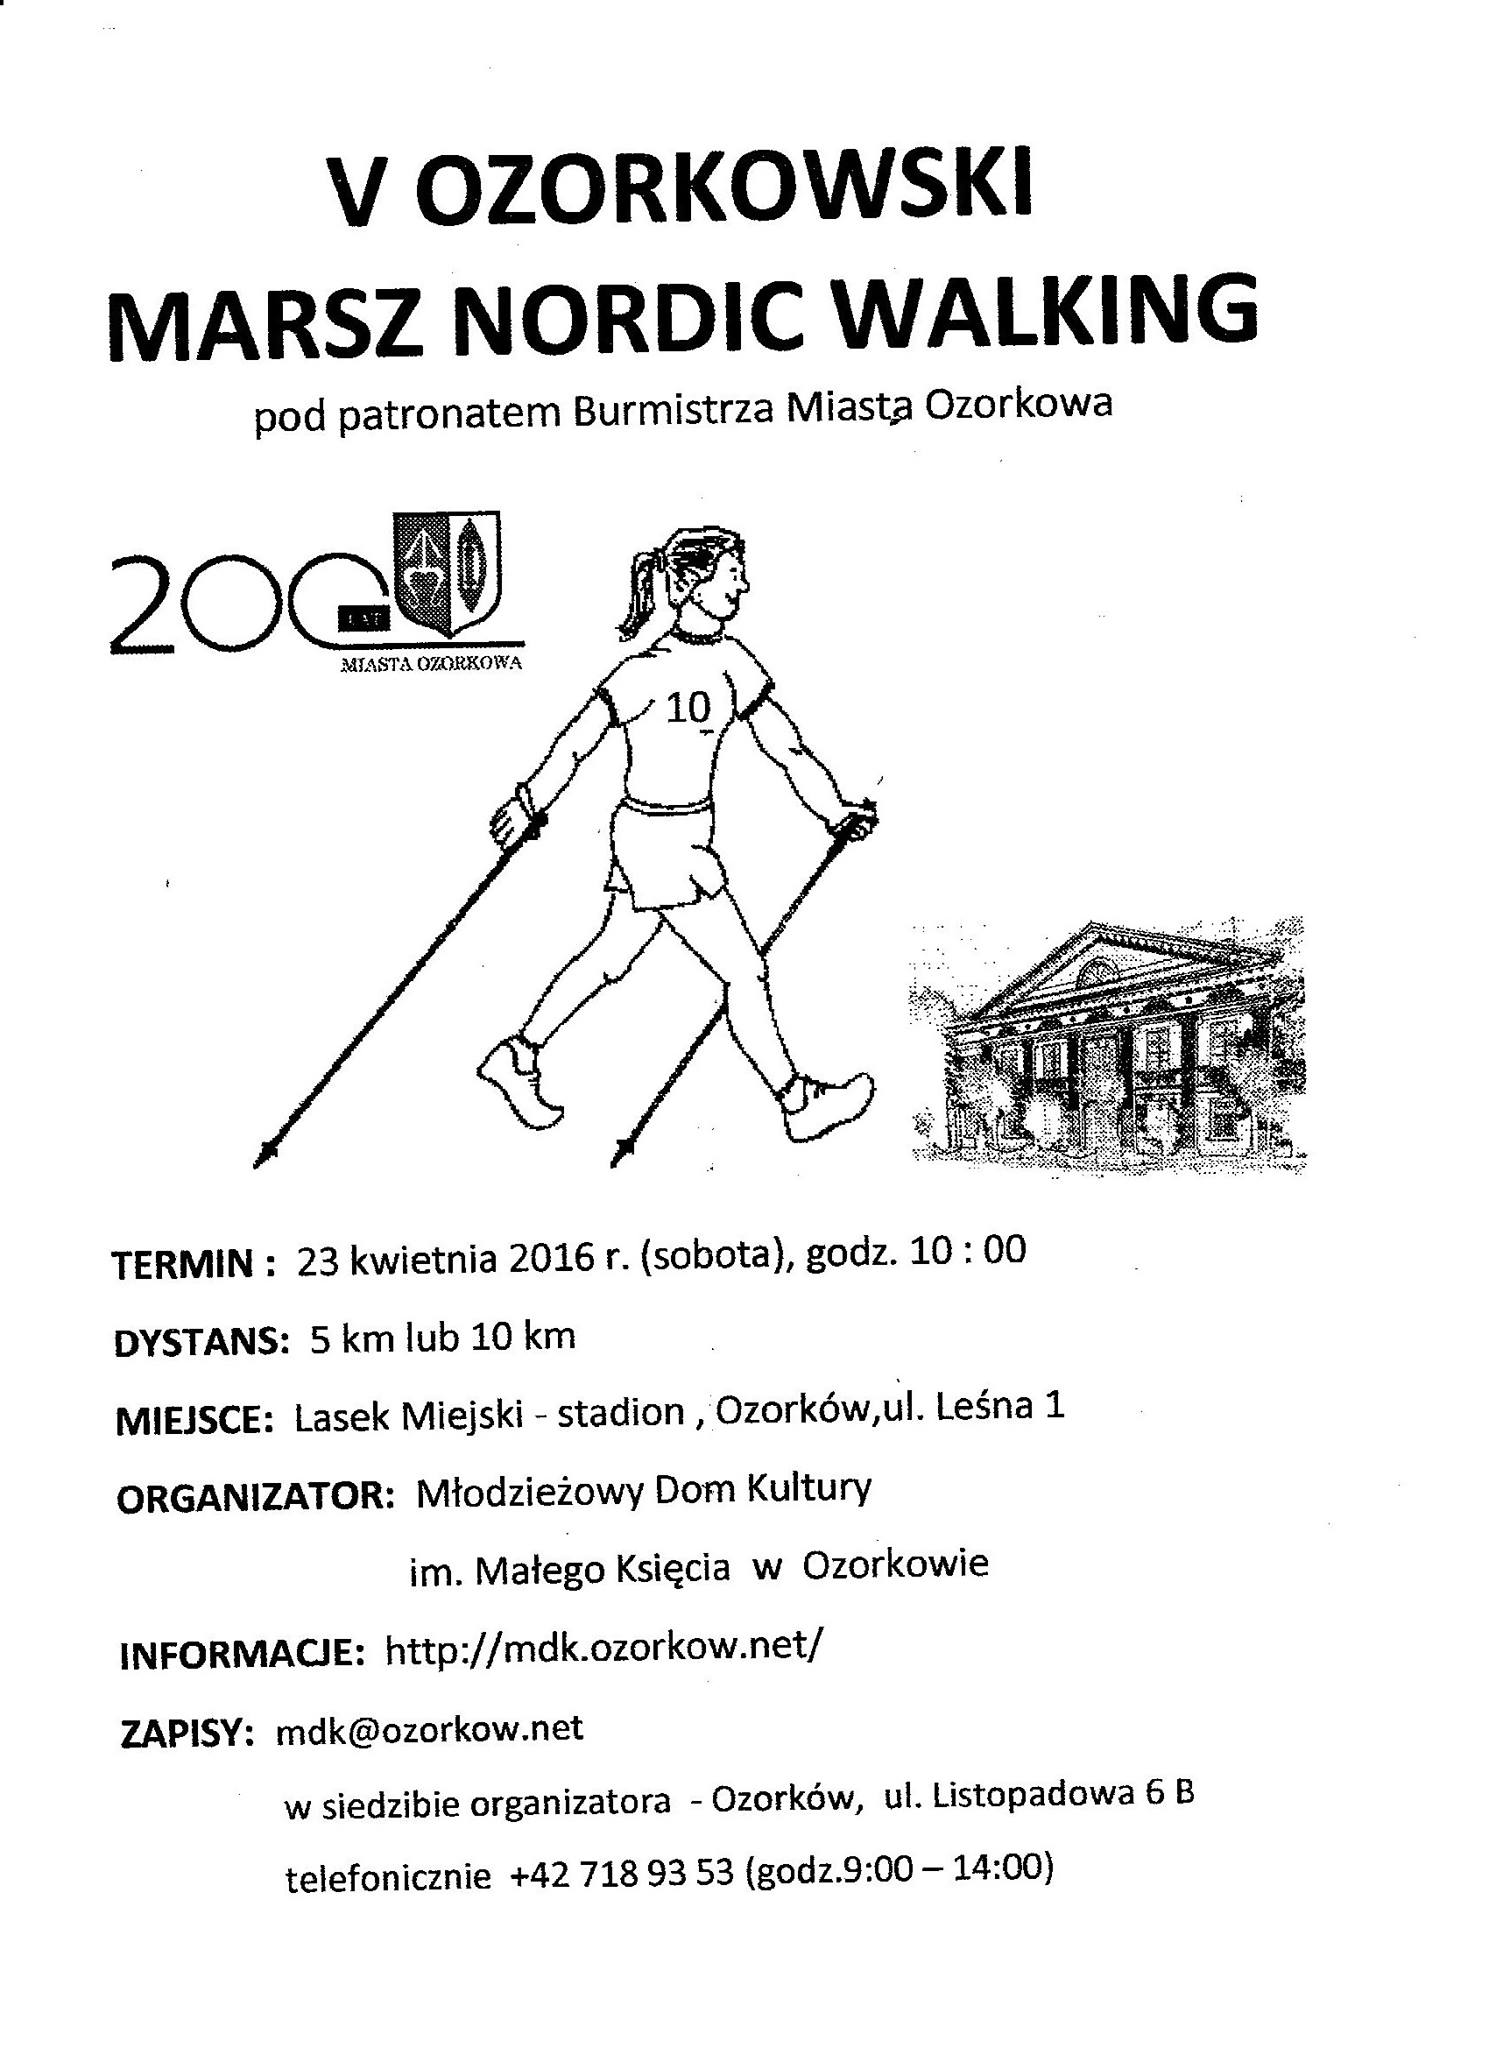 V Ozorkowski Marsz Nordic Walking